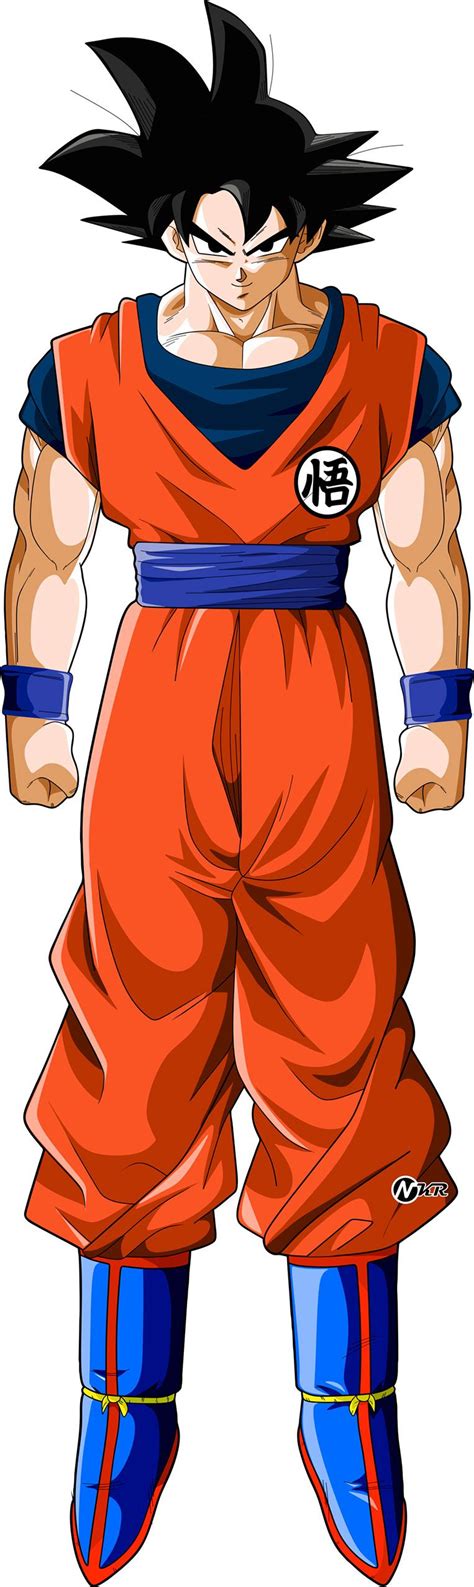 Goku Na Forma Base Dragon Ball Super Anime Dragon Ball Super Dragon